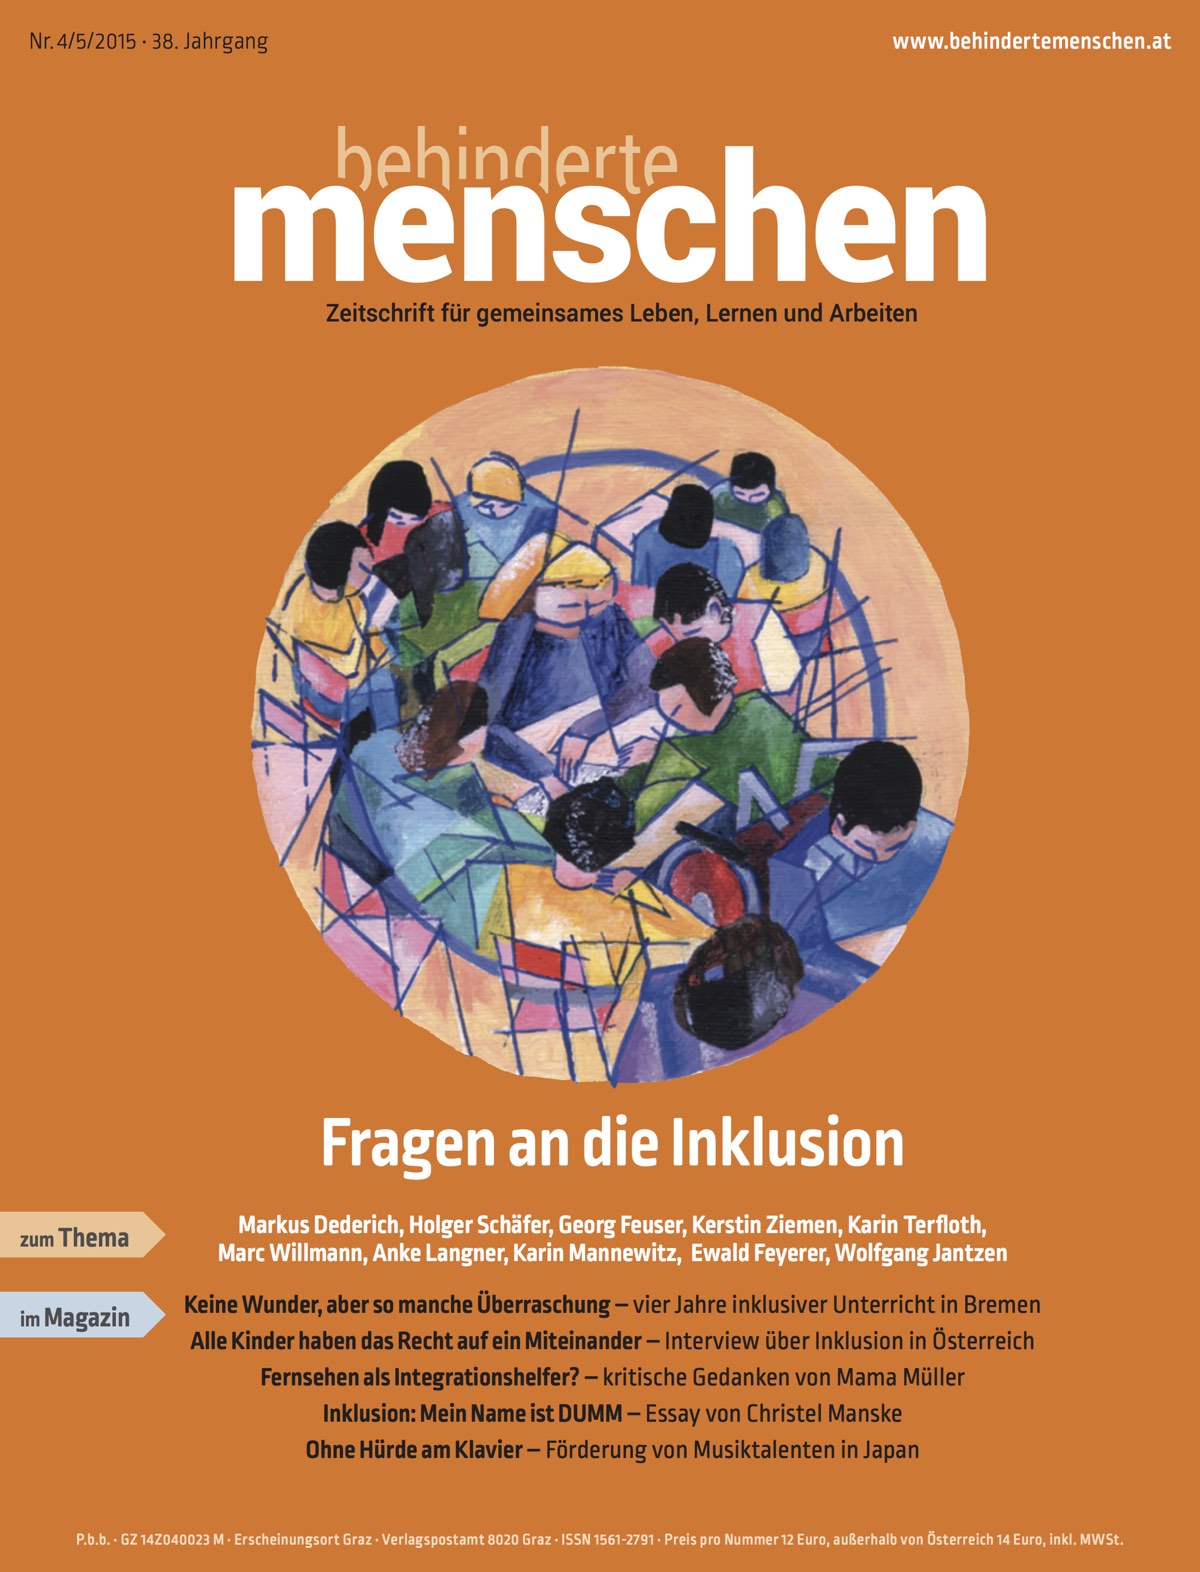 Titelbild der Zeitschrift BEHINDERTE MENSCHEN, Ausgabe 4/5/2015 "Fragen an die Inklusion"